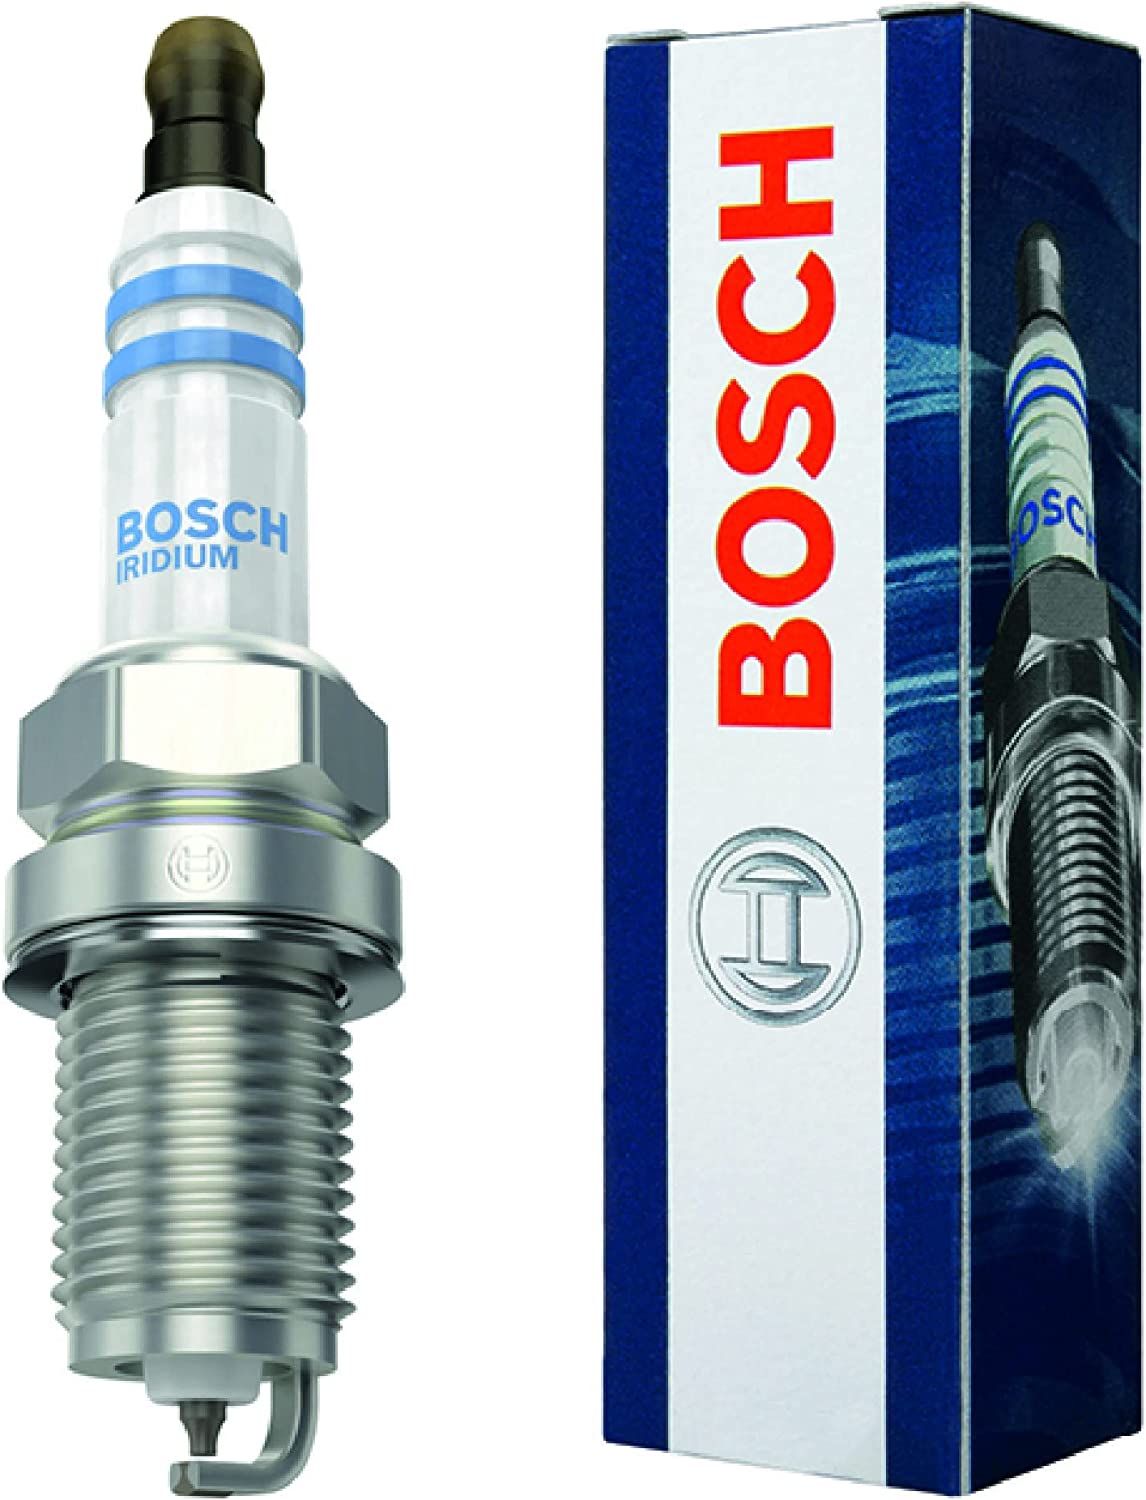 Bosch Automotive Nickel Laser-Welded Spark Plug